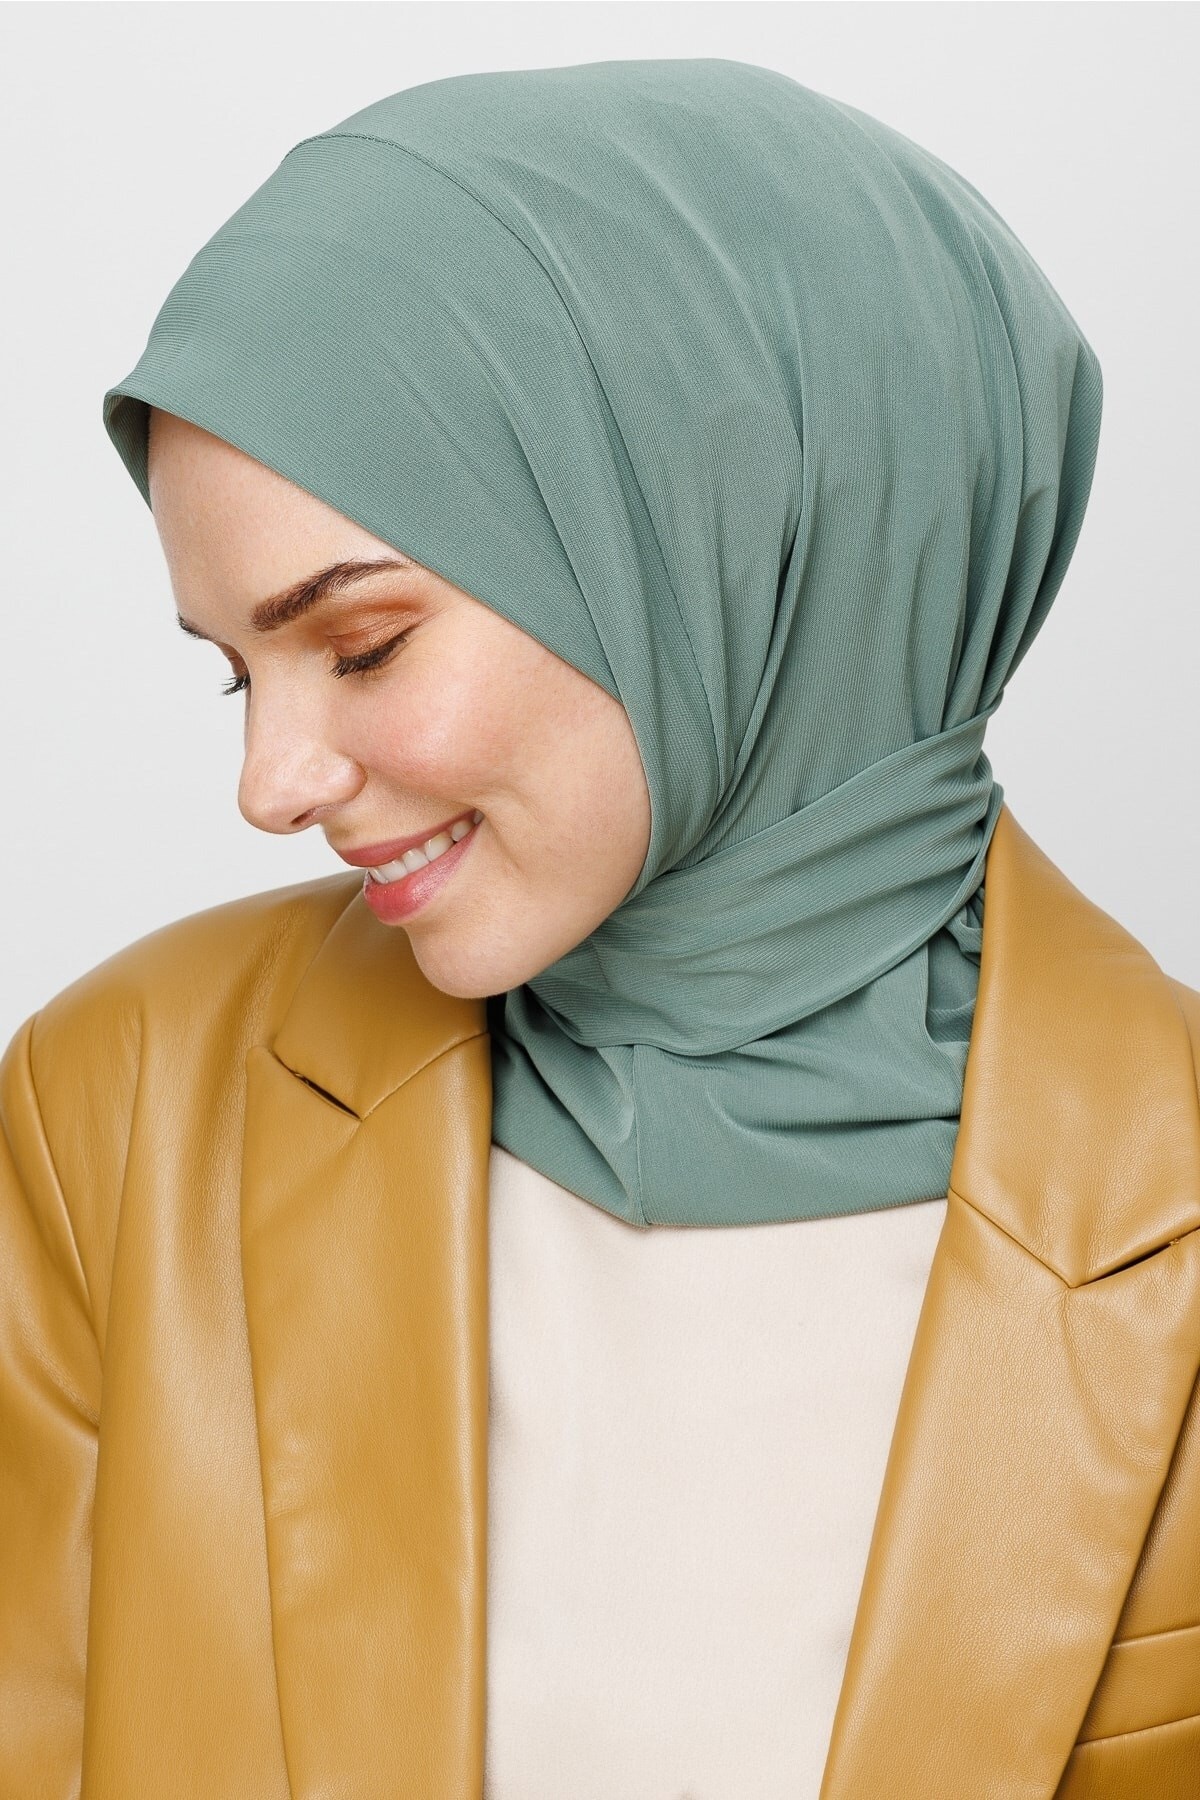 Praktischer Hijab